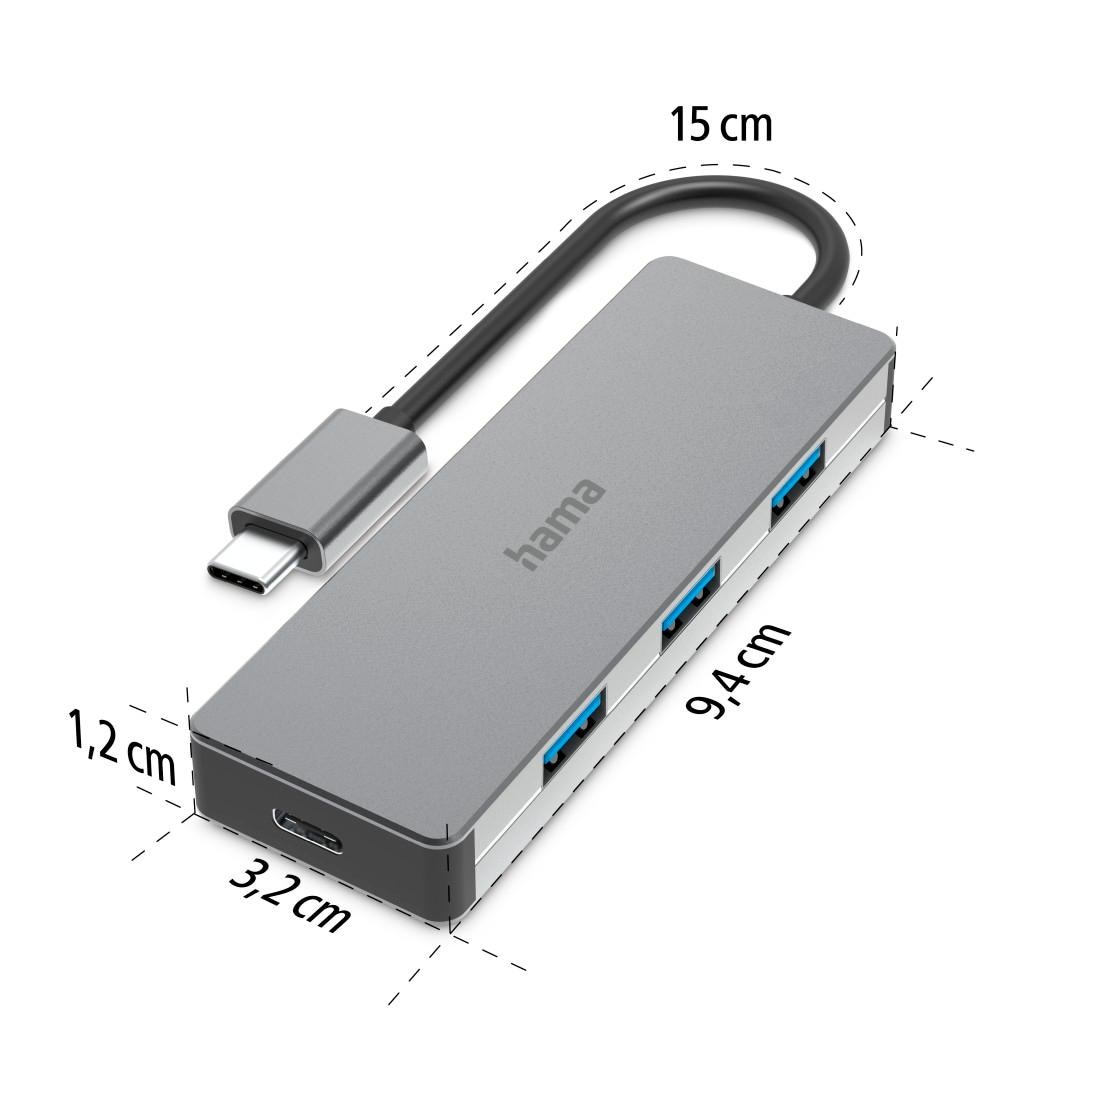 Hama USB-Adapter »USB-C Multiport Hub für Laptop mit 4 Ports, USB-A, USB-C, silberfarben«, USB-C zu USB Typ A-USB-C, 15 cm, Laptop Dockingstation, USB Adapter, robustes Aluminiumgehäuse, kompakt